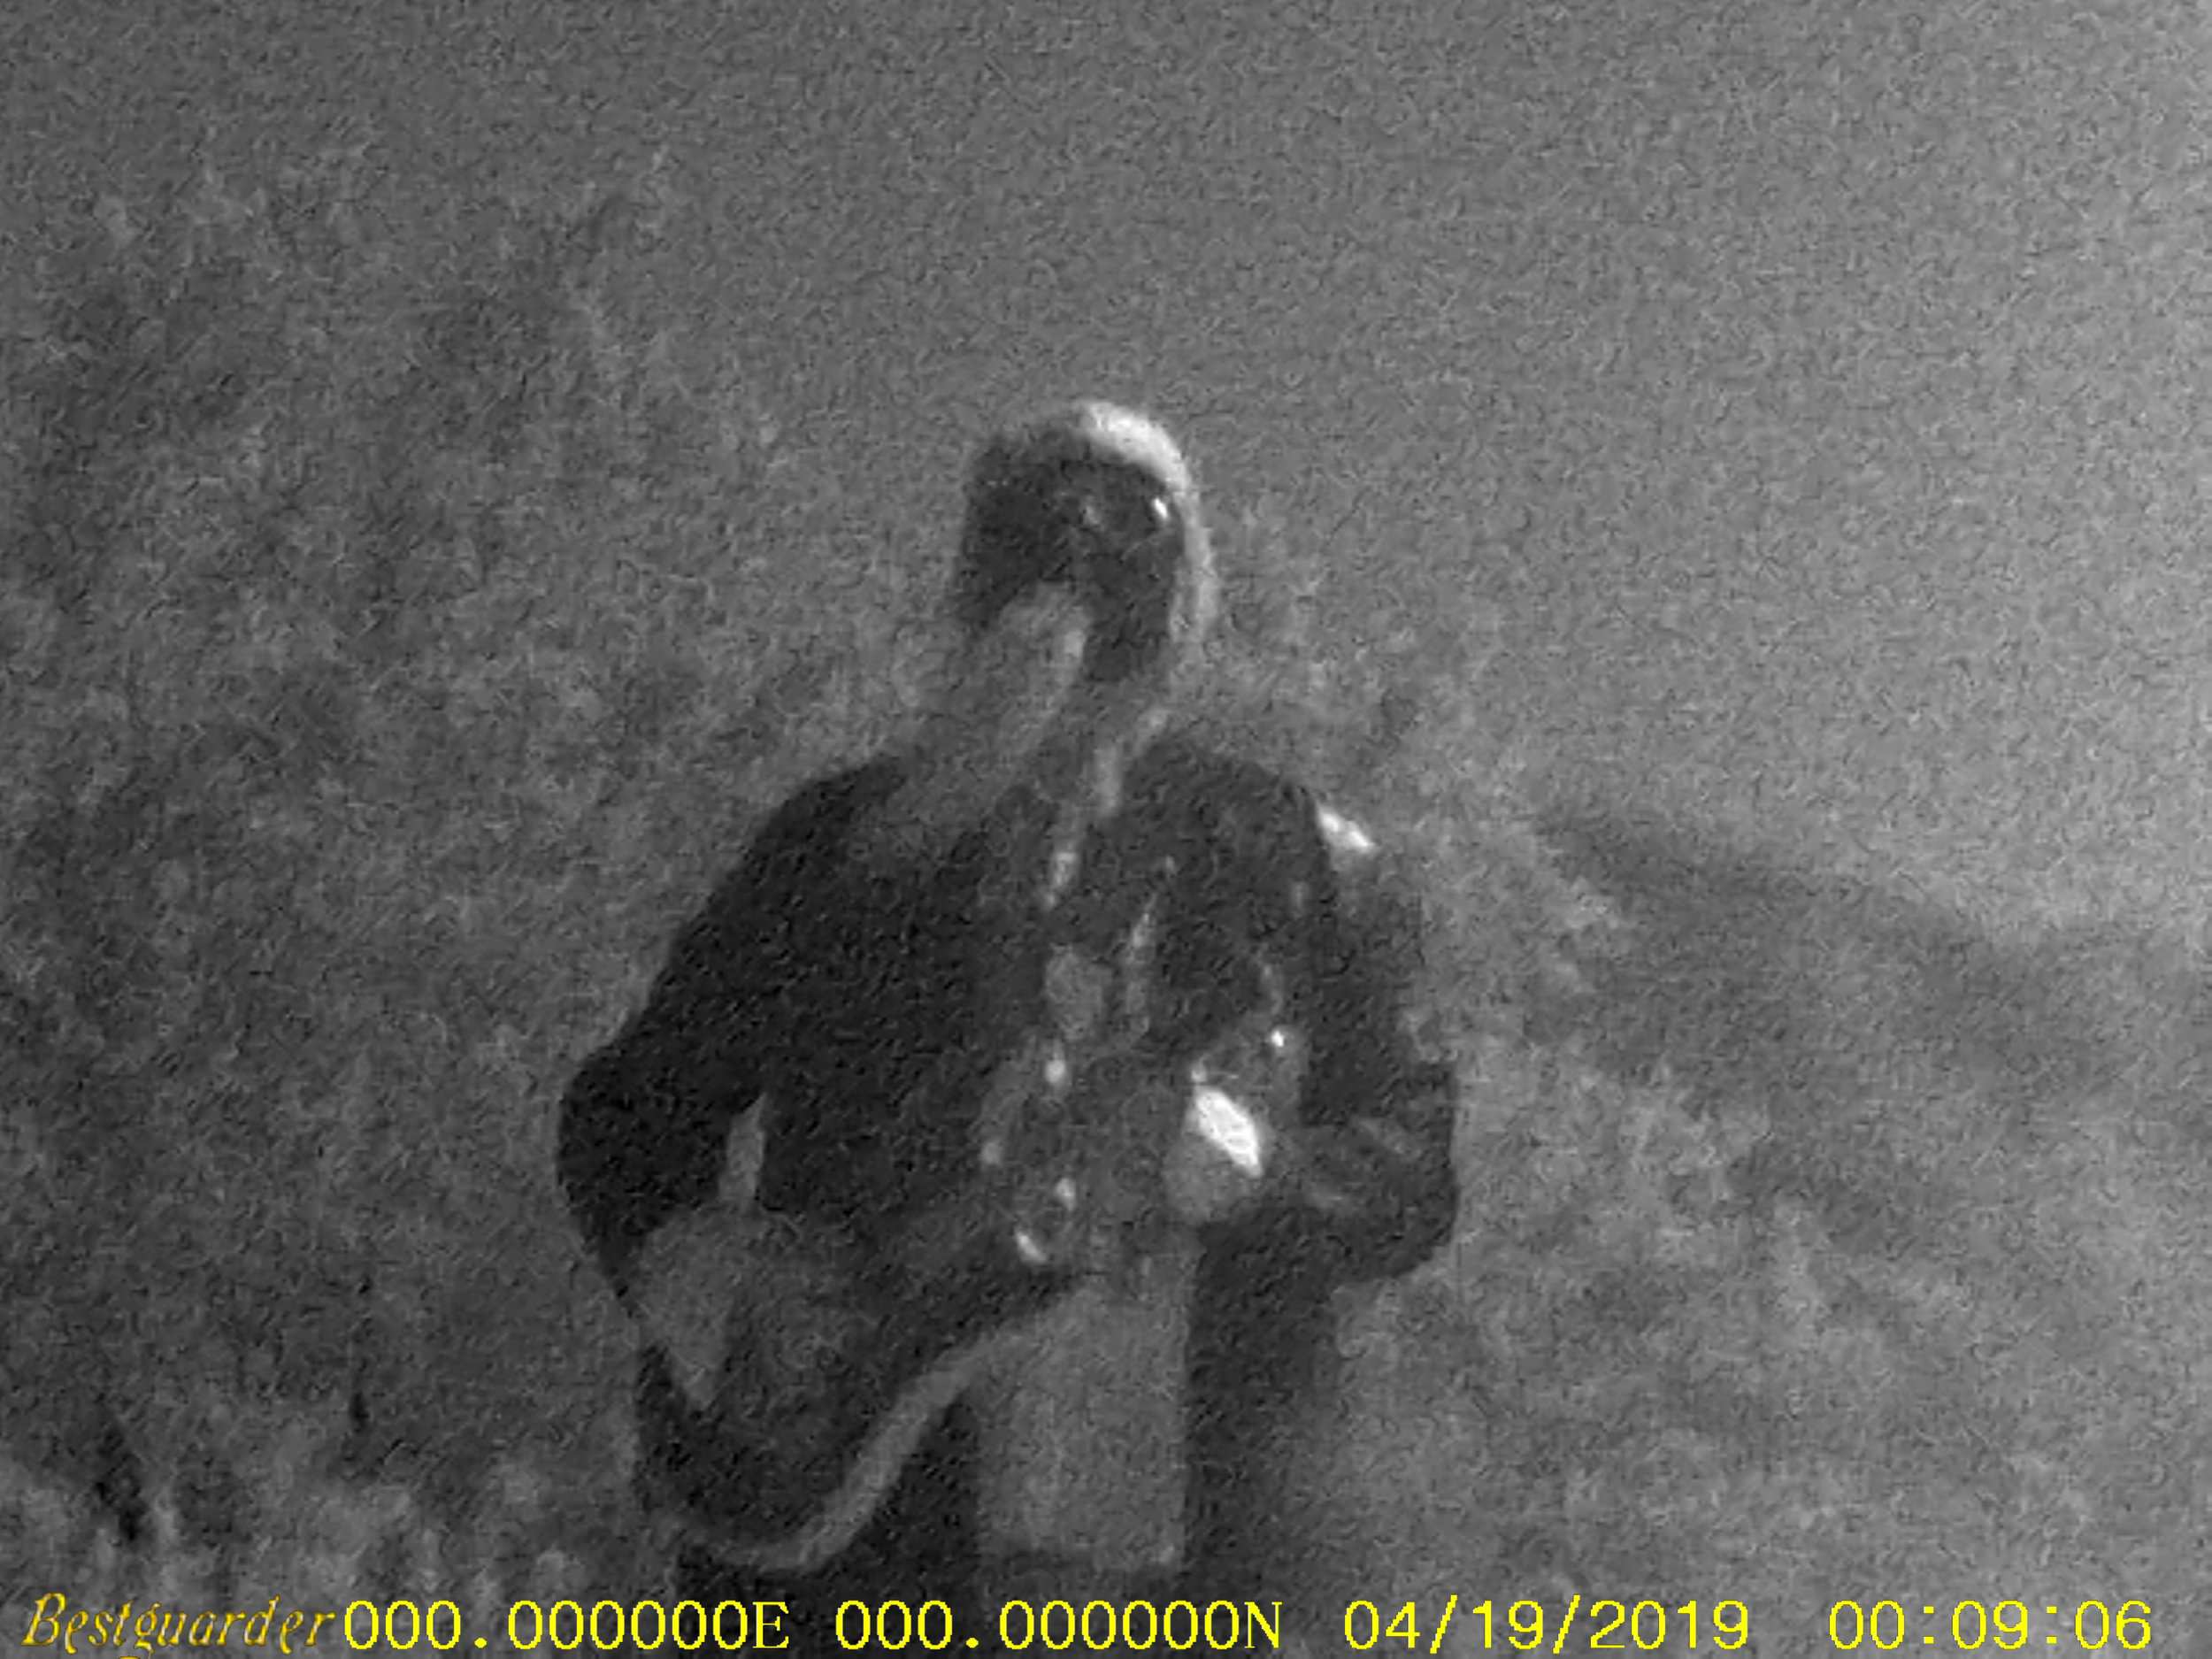 Count Pukebeard at night in the High Desert Landers, California, April 2019